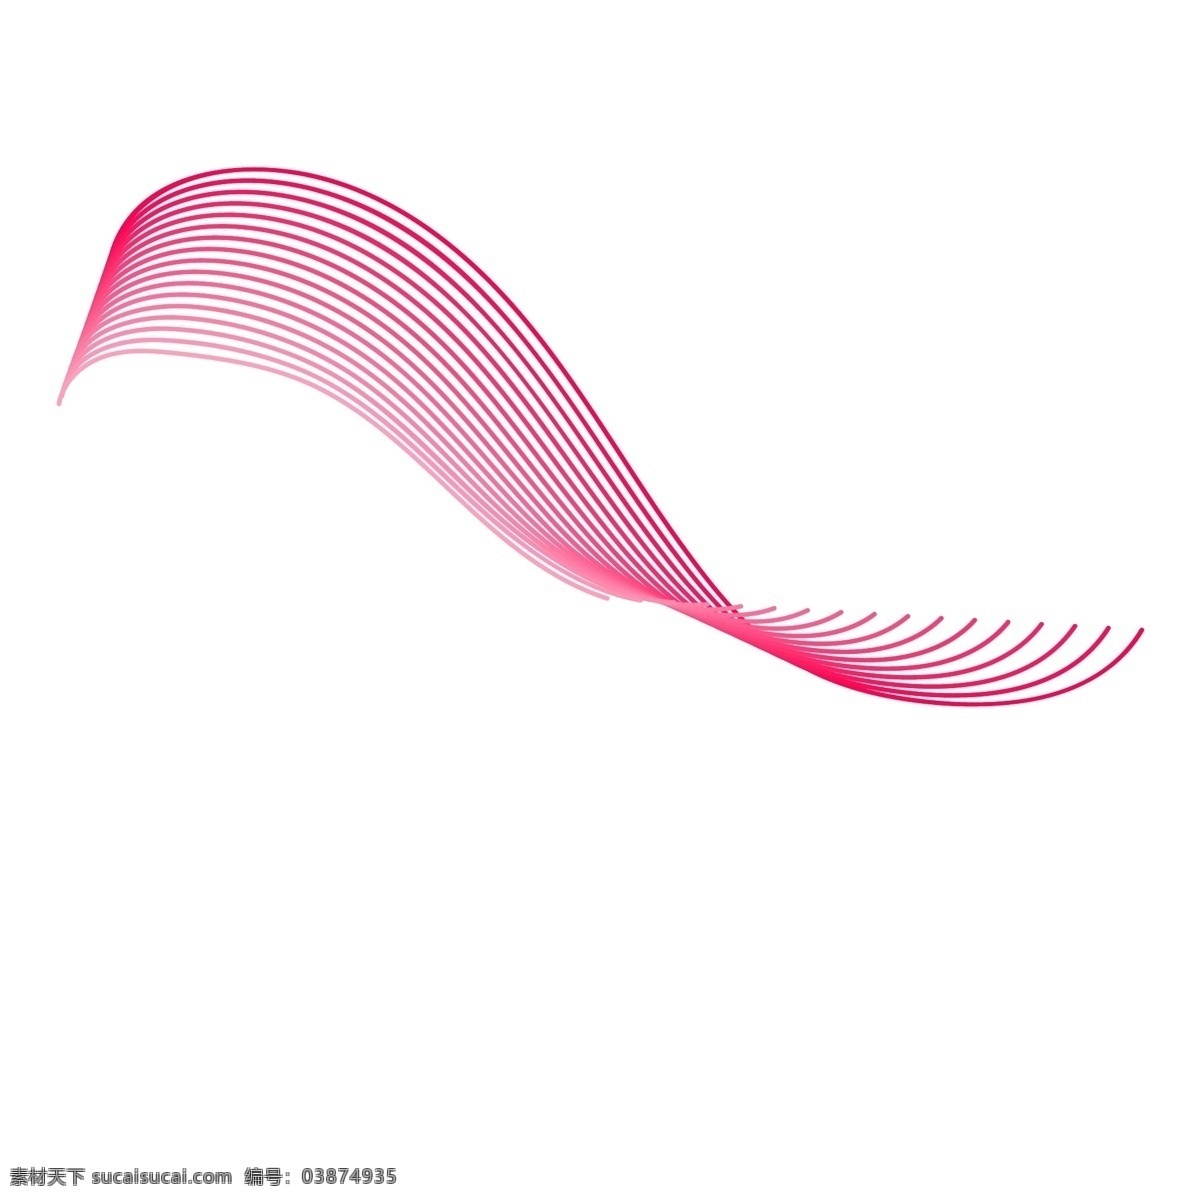 红色柔和线条 弧度线 柔和线条 柔和曲线 装饰曲线 飘逸曲线 线条 波浪线